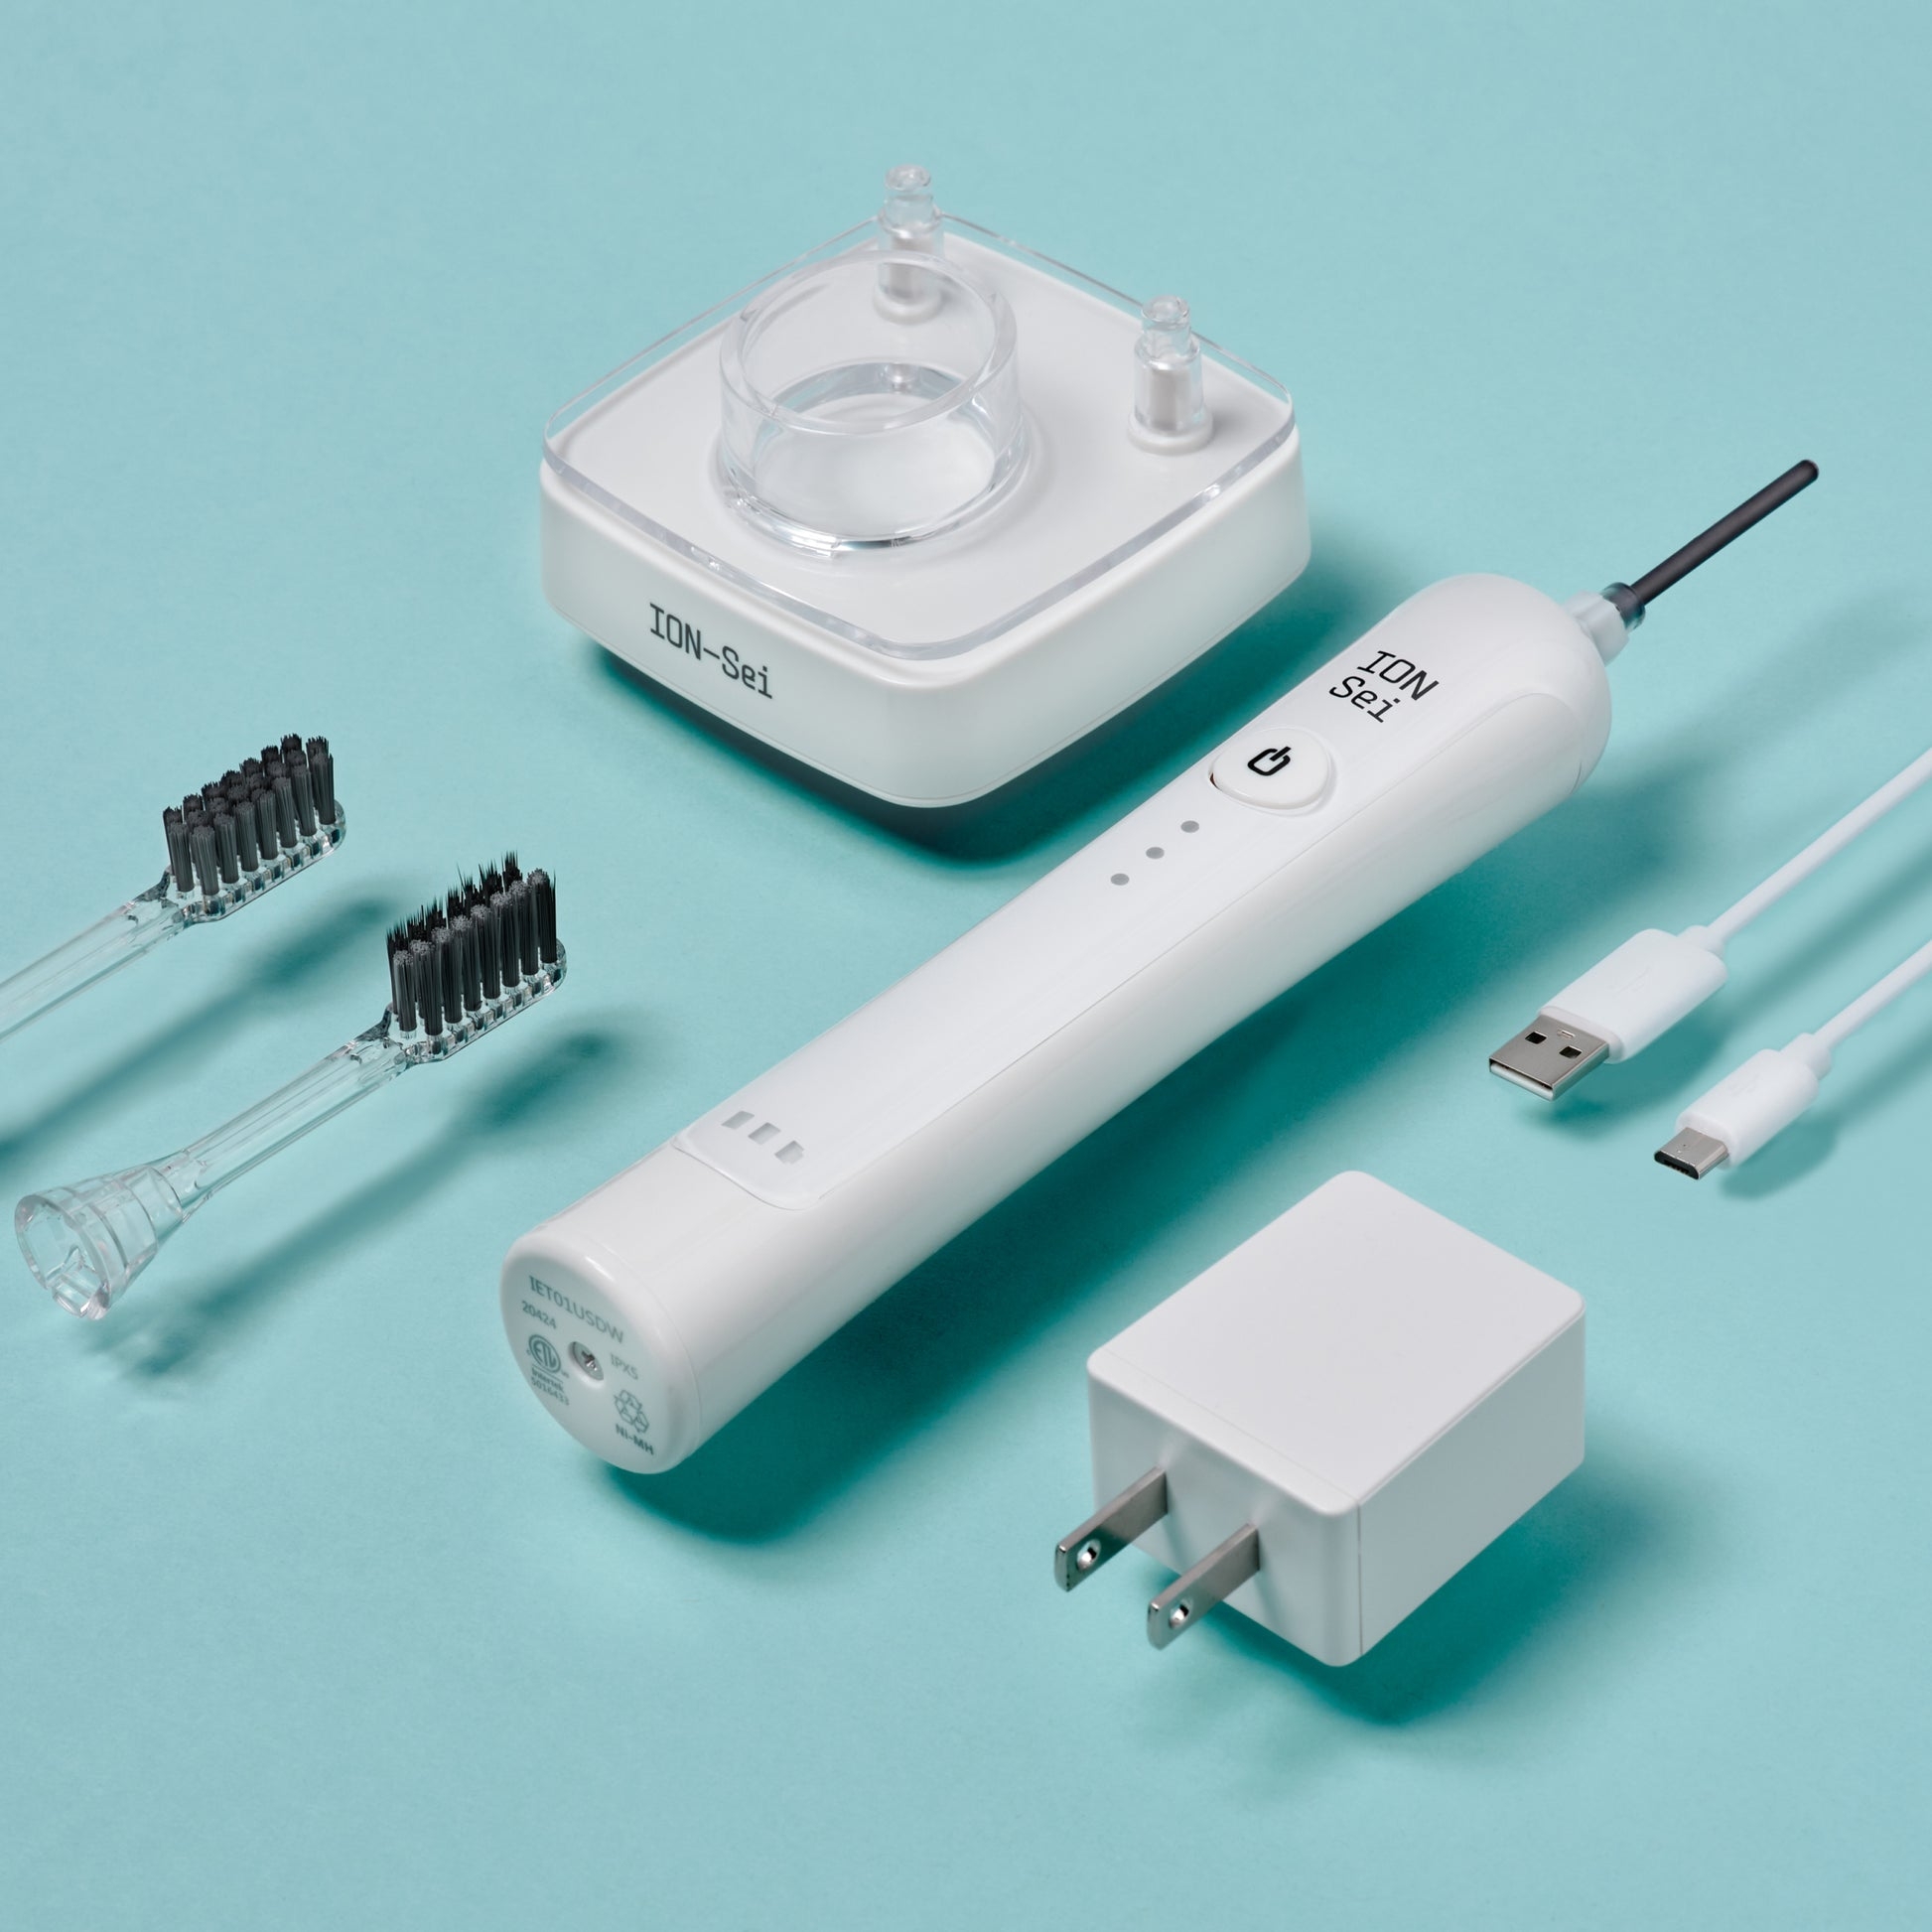 ION-Sei(イオン セイ) 電動歯ブラシの商品画像3 